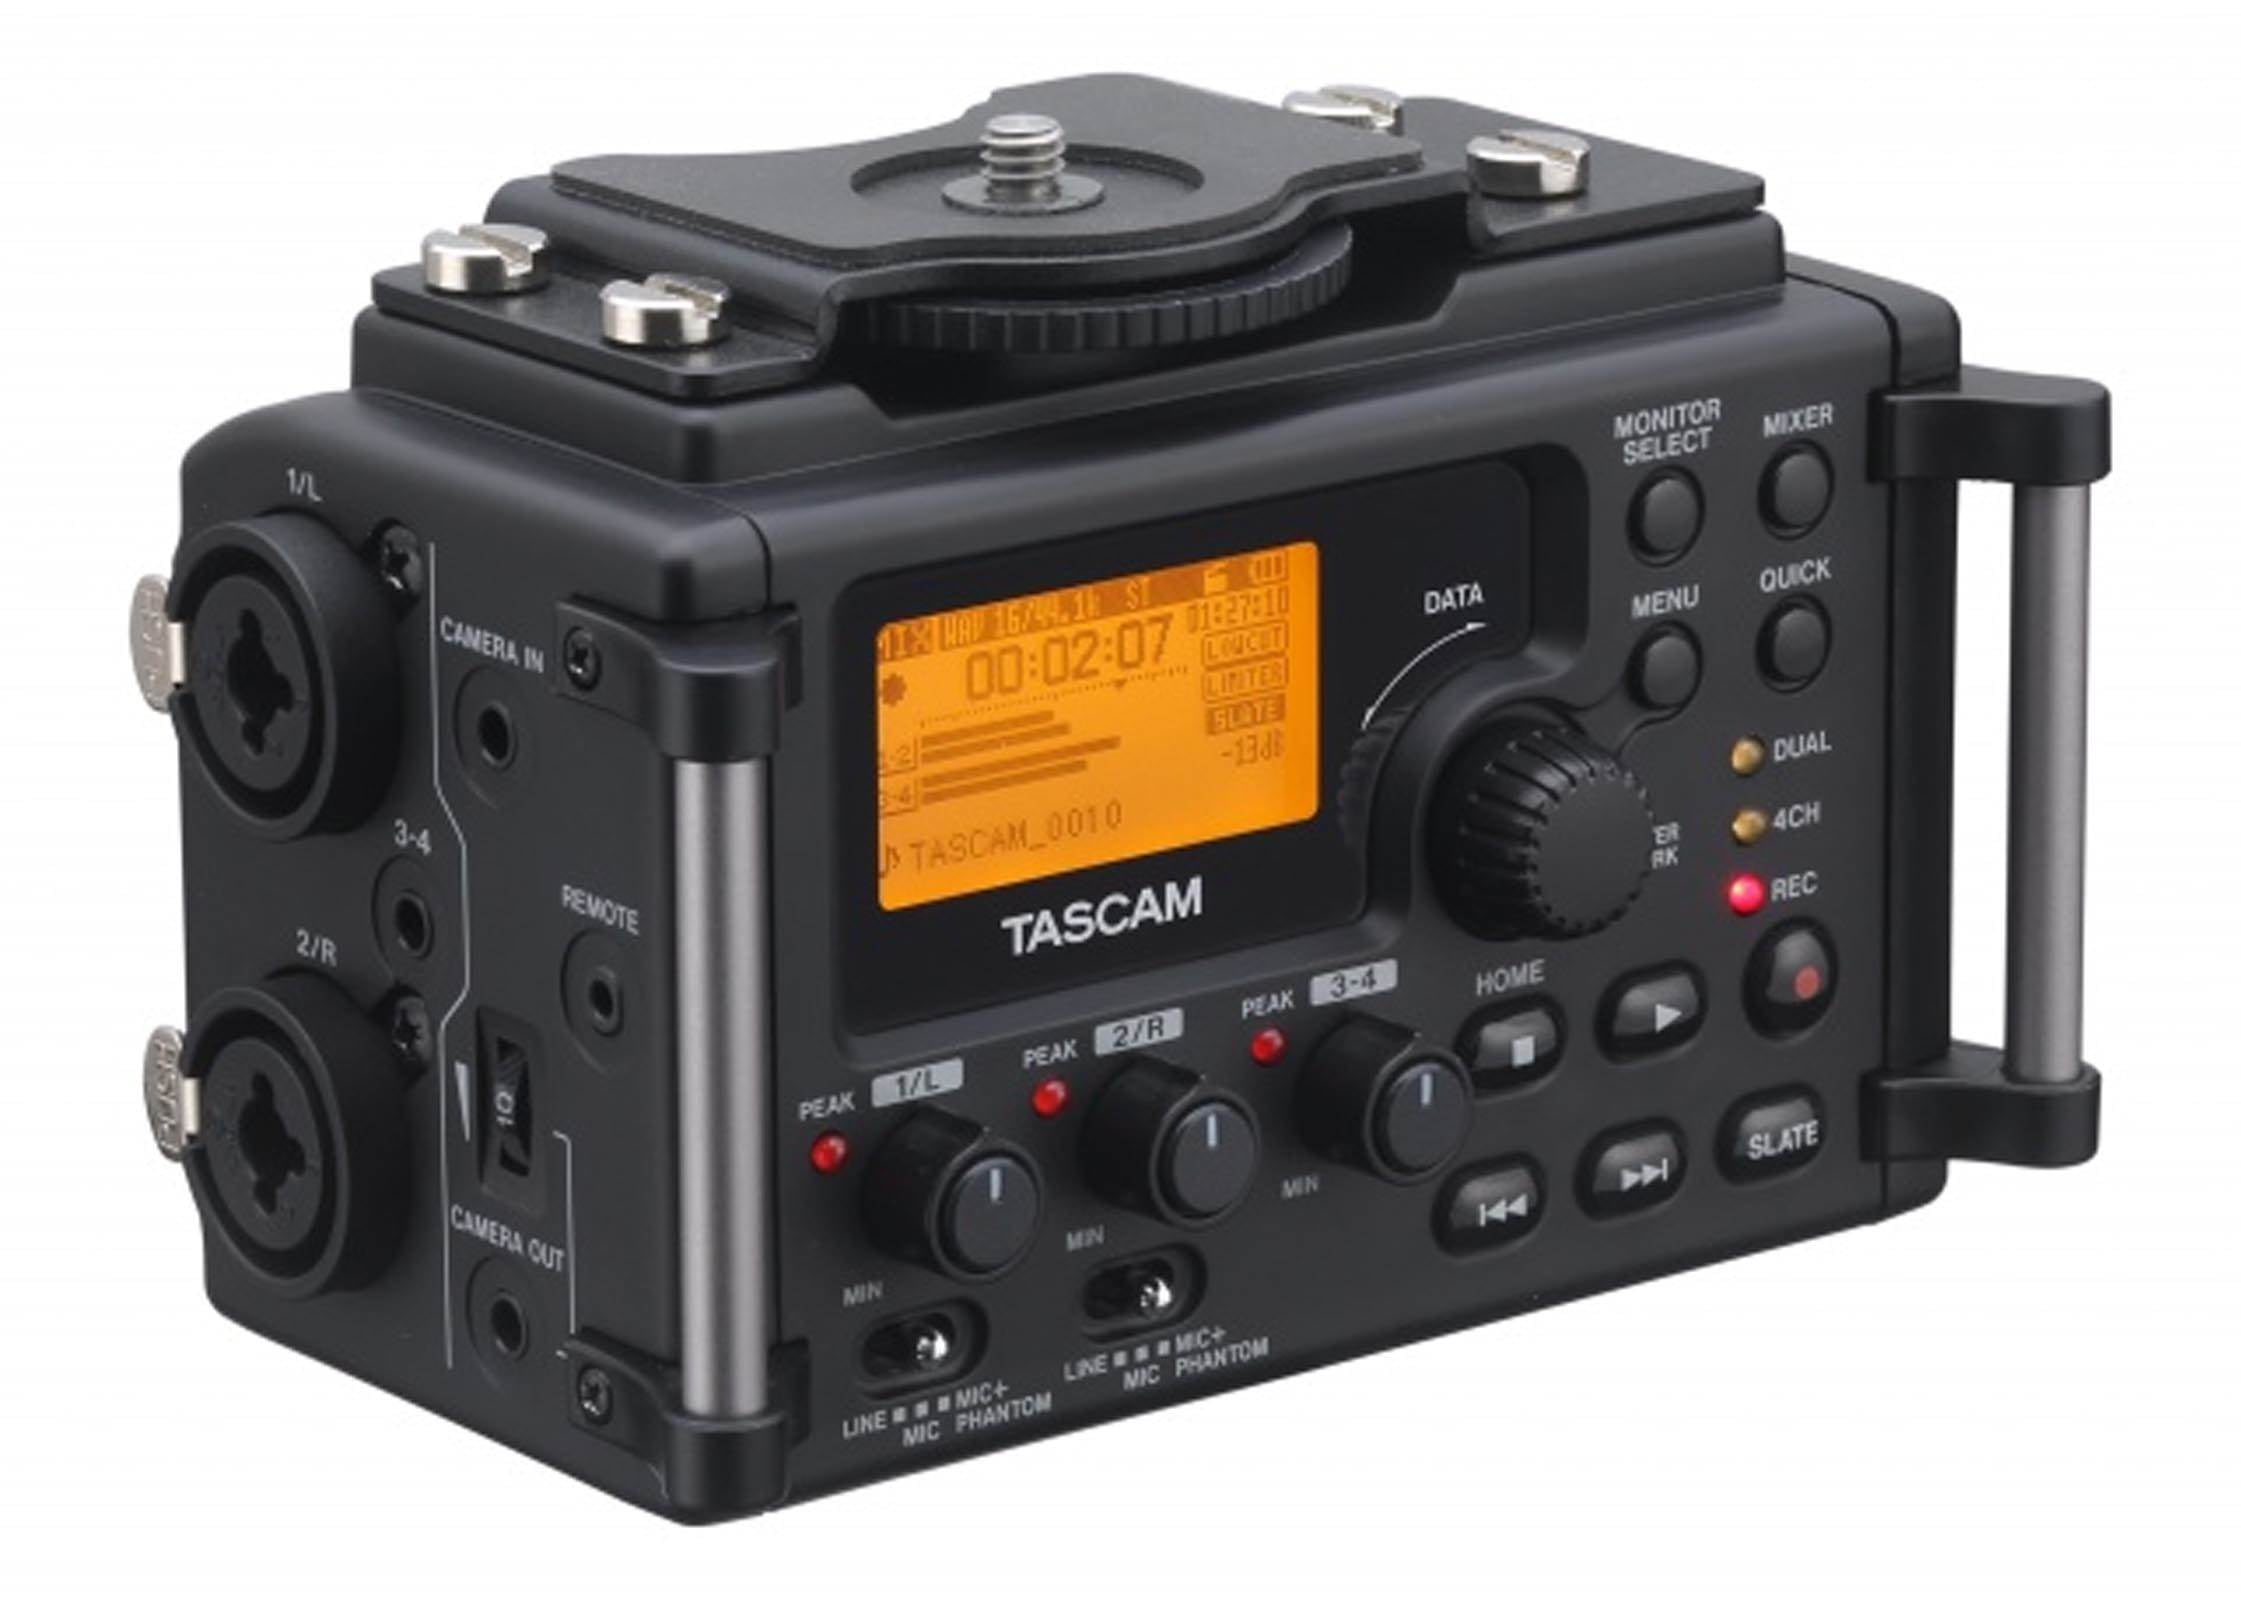 NEW! TASCAM 4 Channel Linear PCM Audio Portable DSLR Film Recorder/ Mixer - Walmart.com